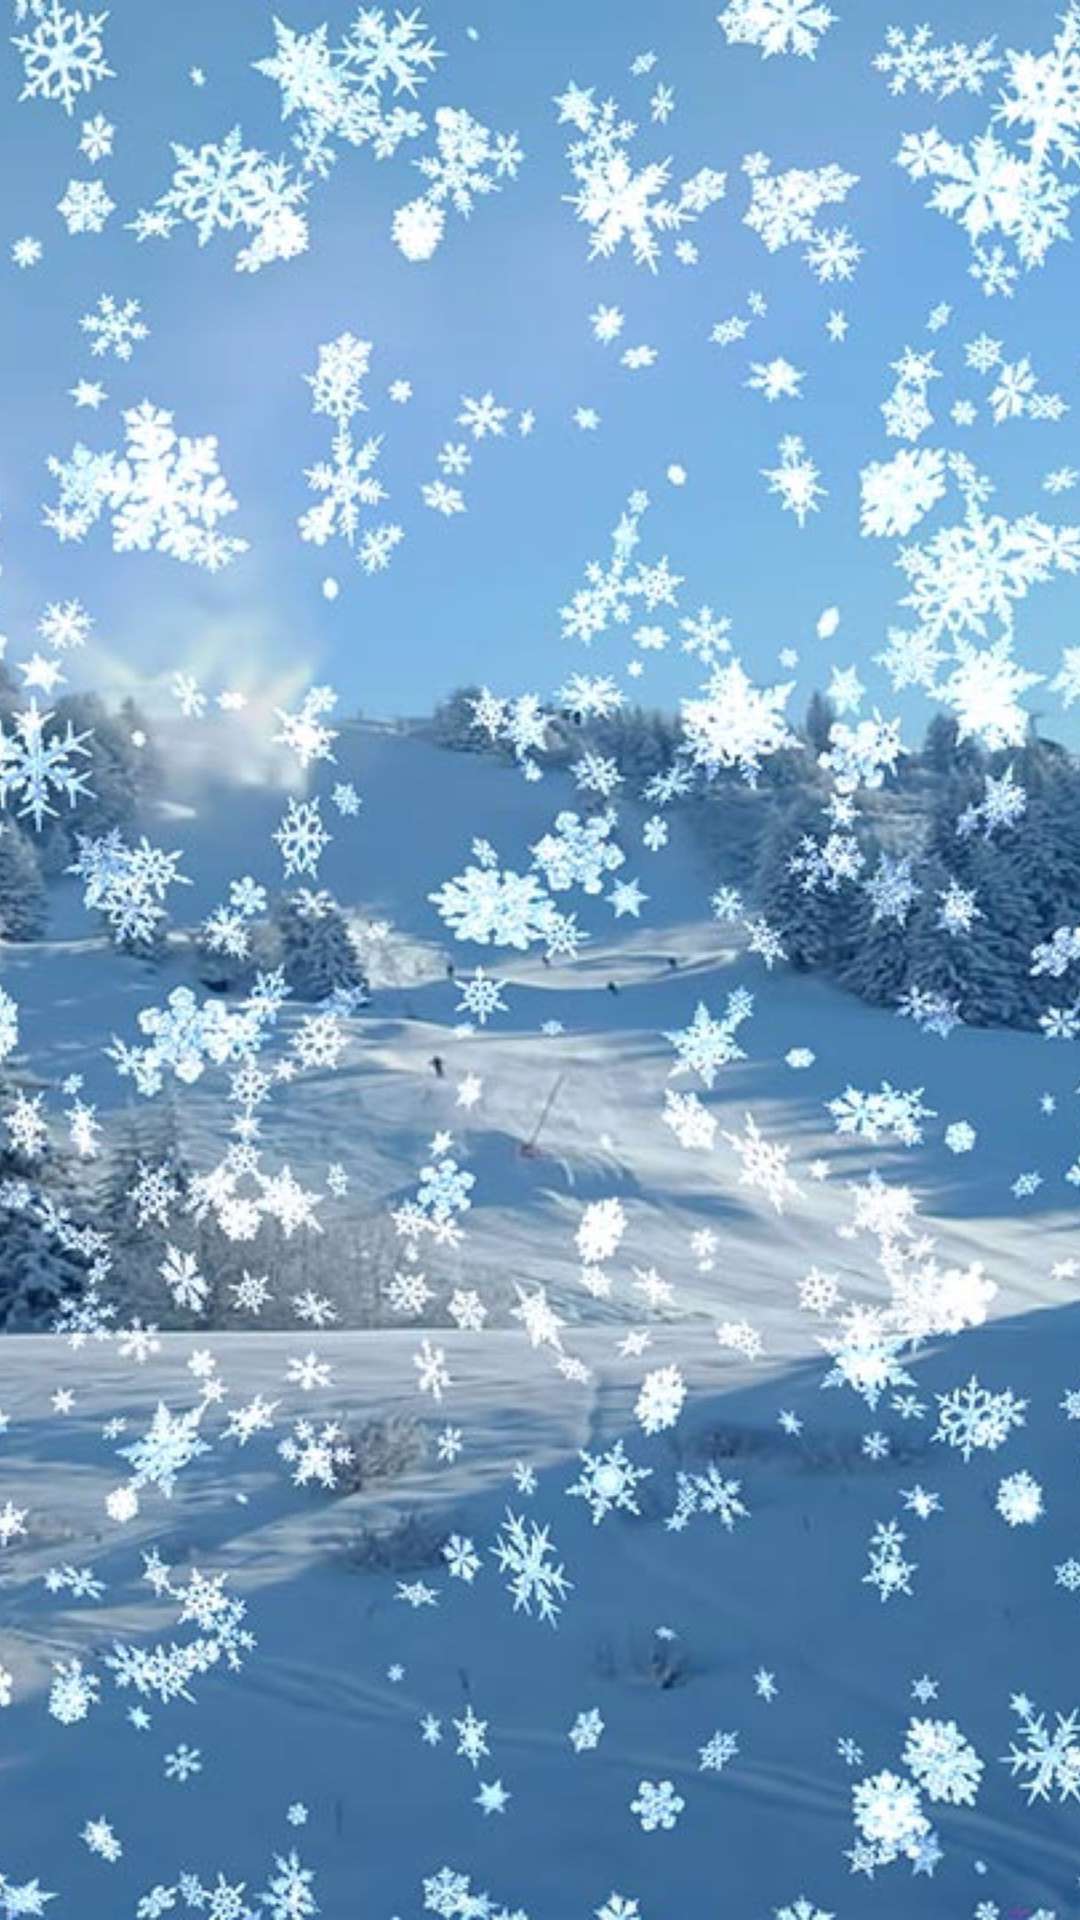 Anime Girl in winter Wallpaper 4k Ultra HD ID9164